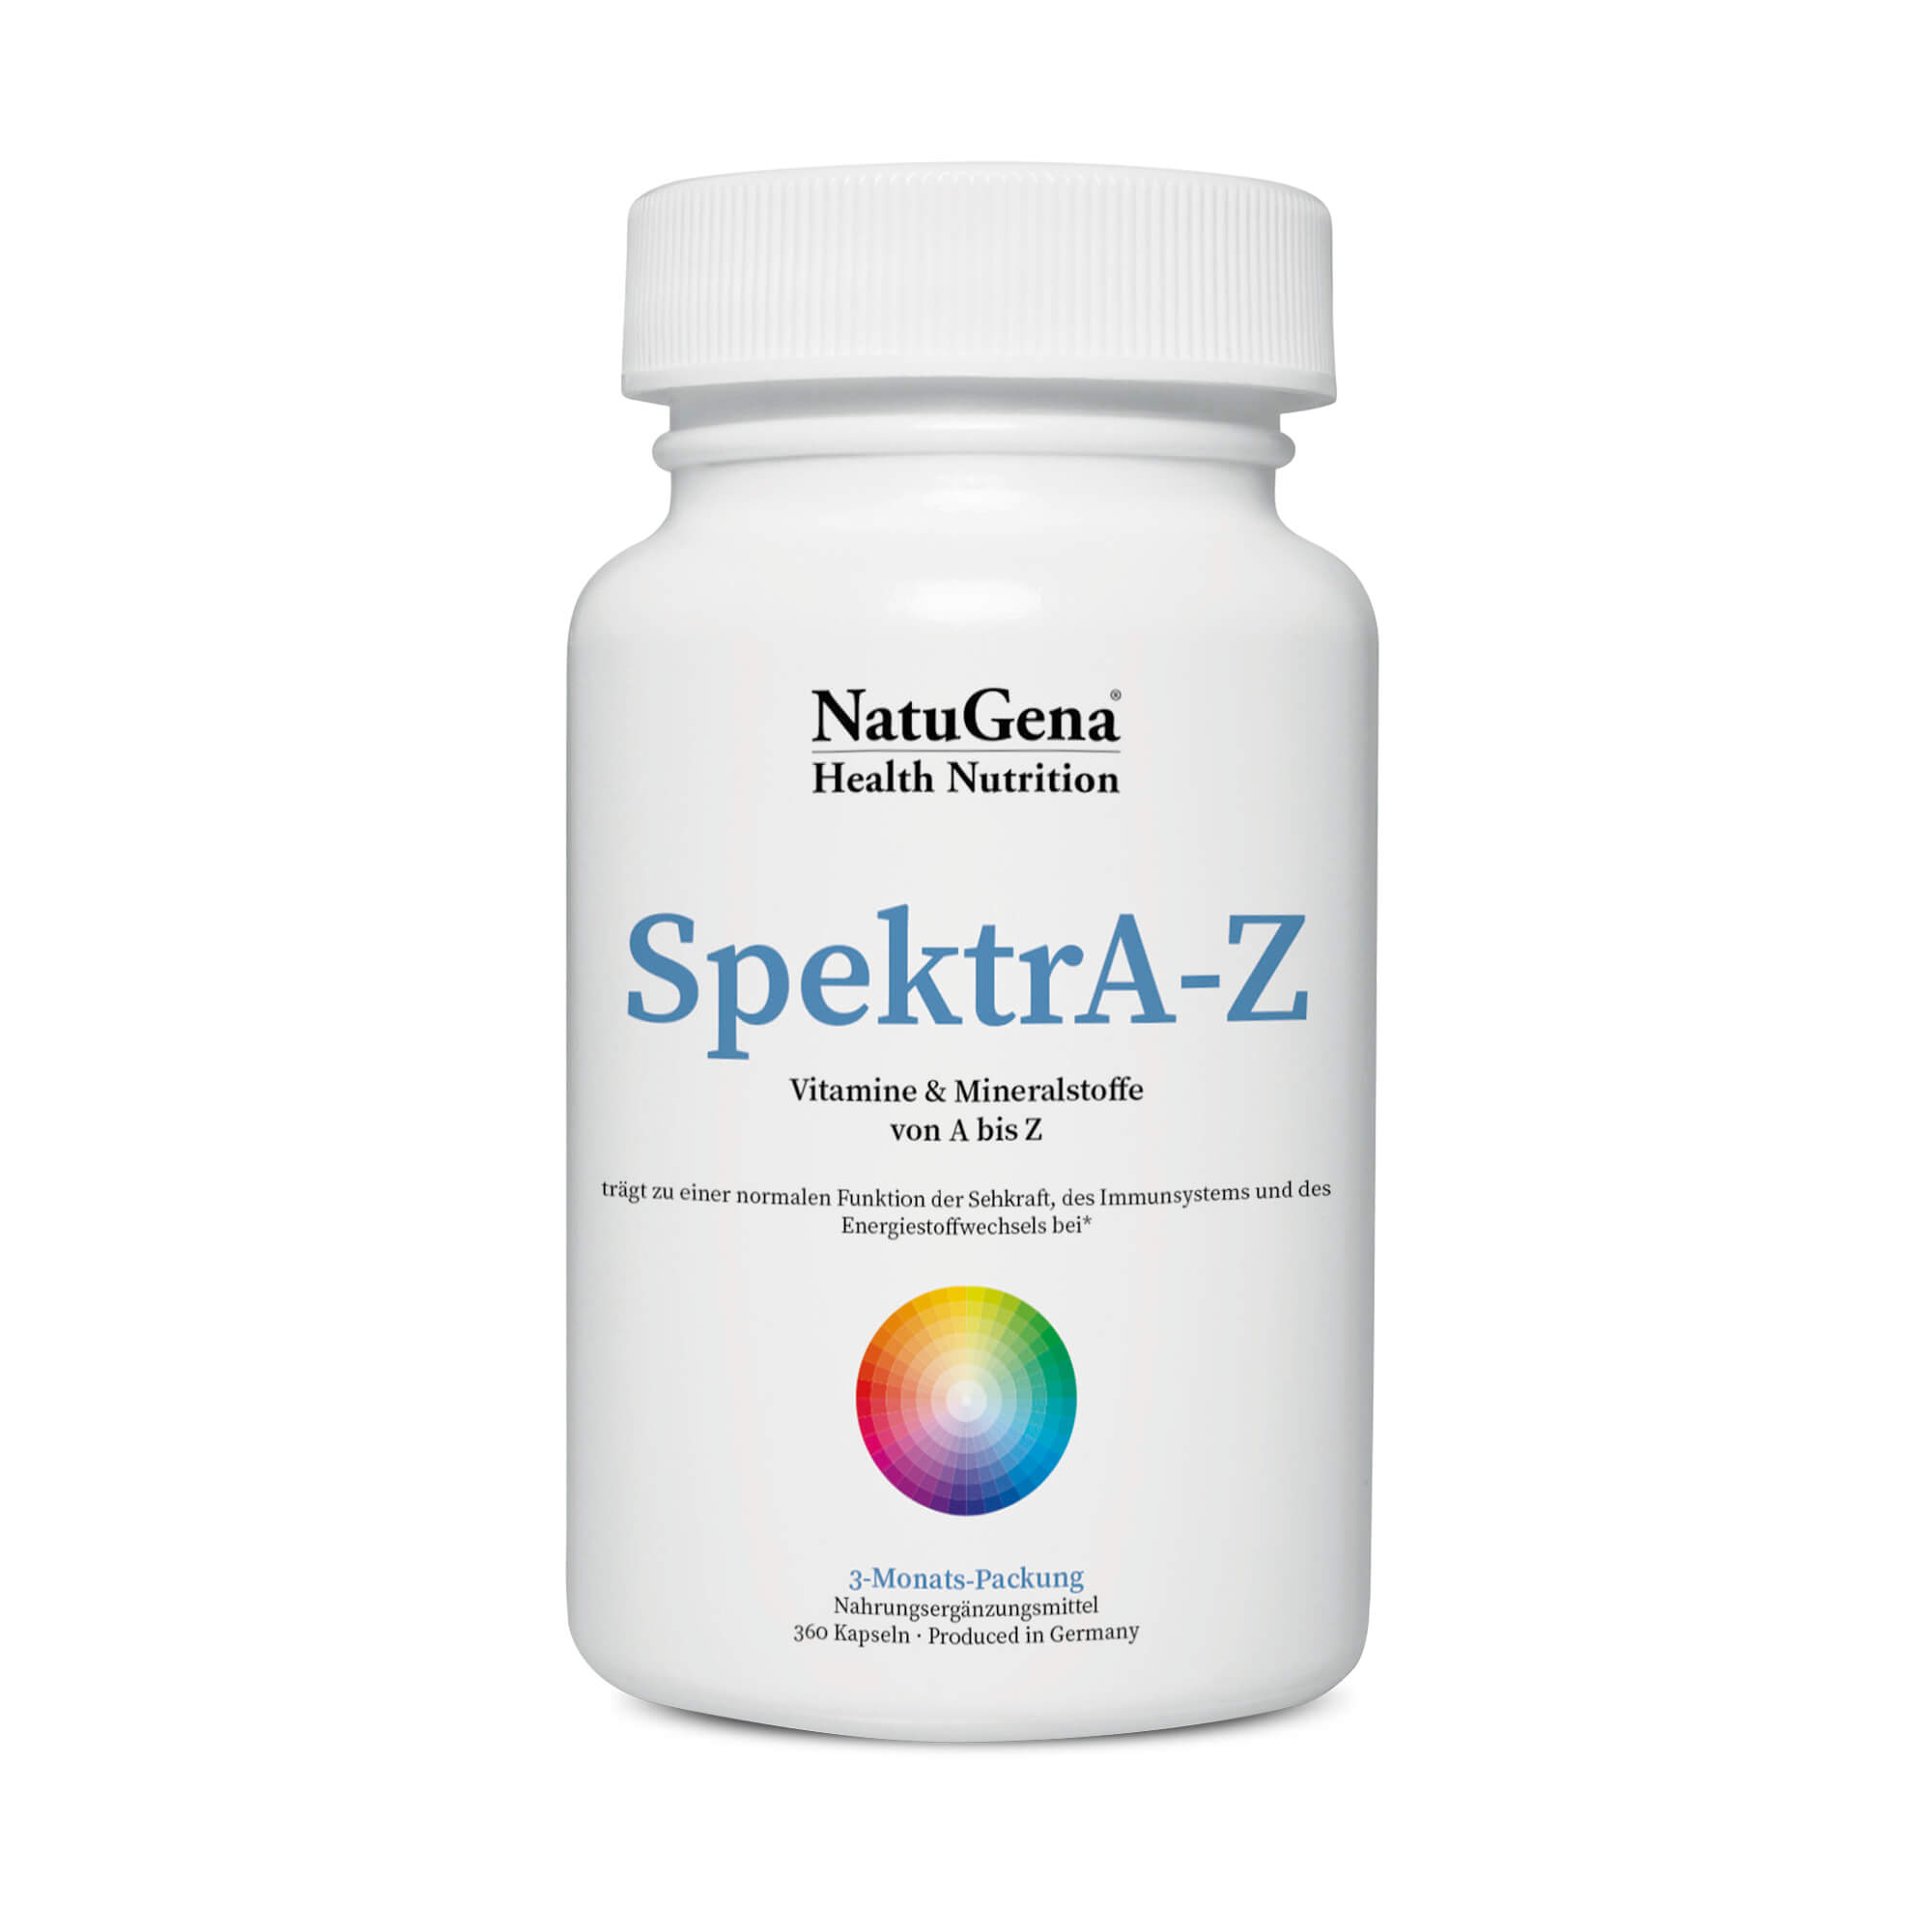 NatuGena SpektrA-Z | 360 Kapseln – Vollständiges Vitaminspektrum von A bis Zink